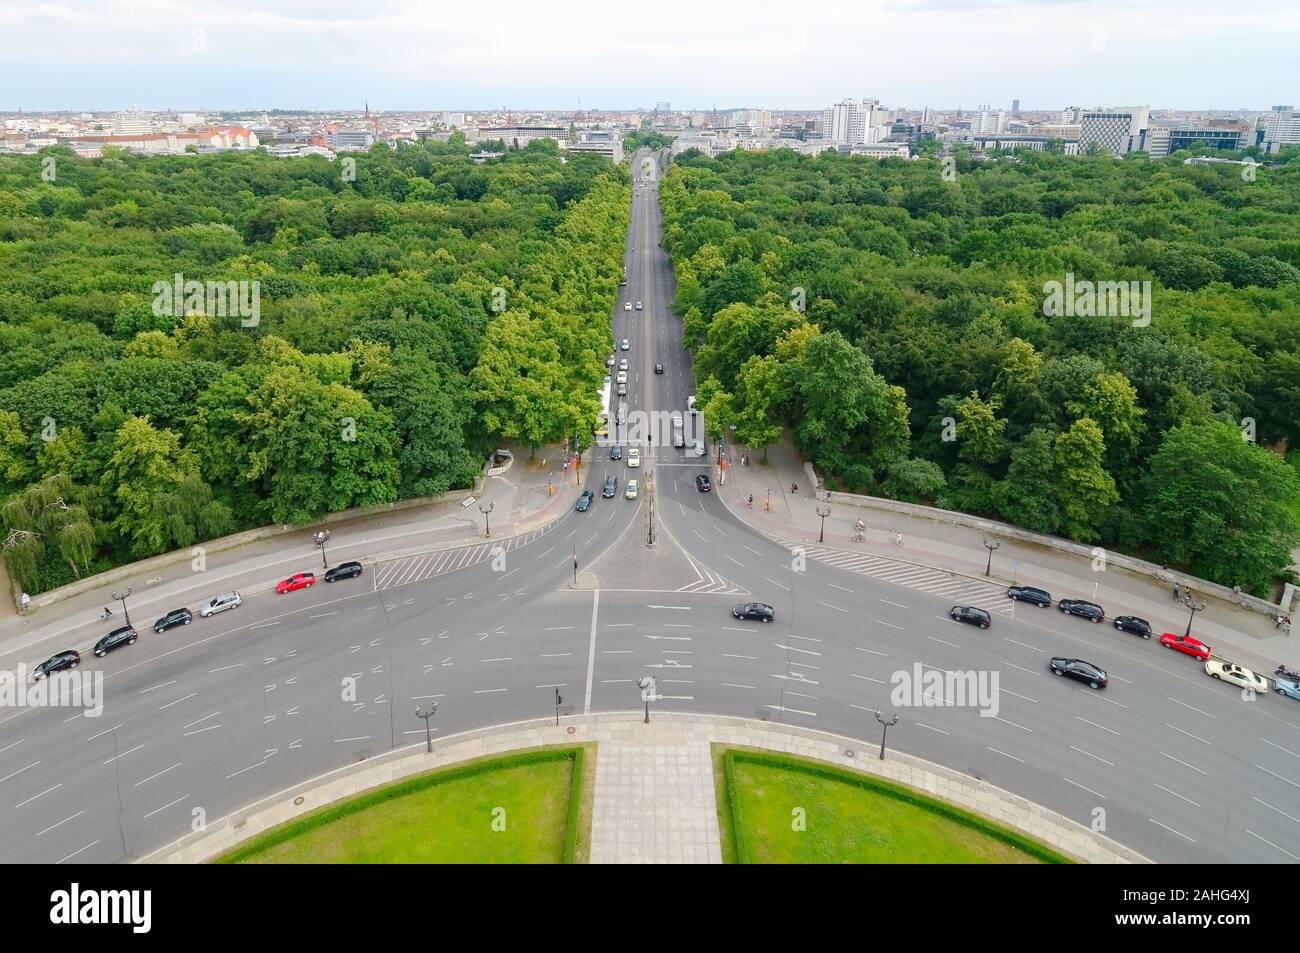 Les plus populaires de Berlin est inner-city park. Le parc est de 210 hectares et est parmi les plus grands jardins urbains de l'Allemagne. Banque D'Images